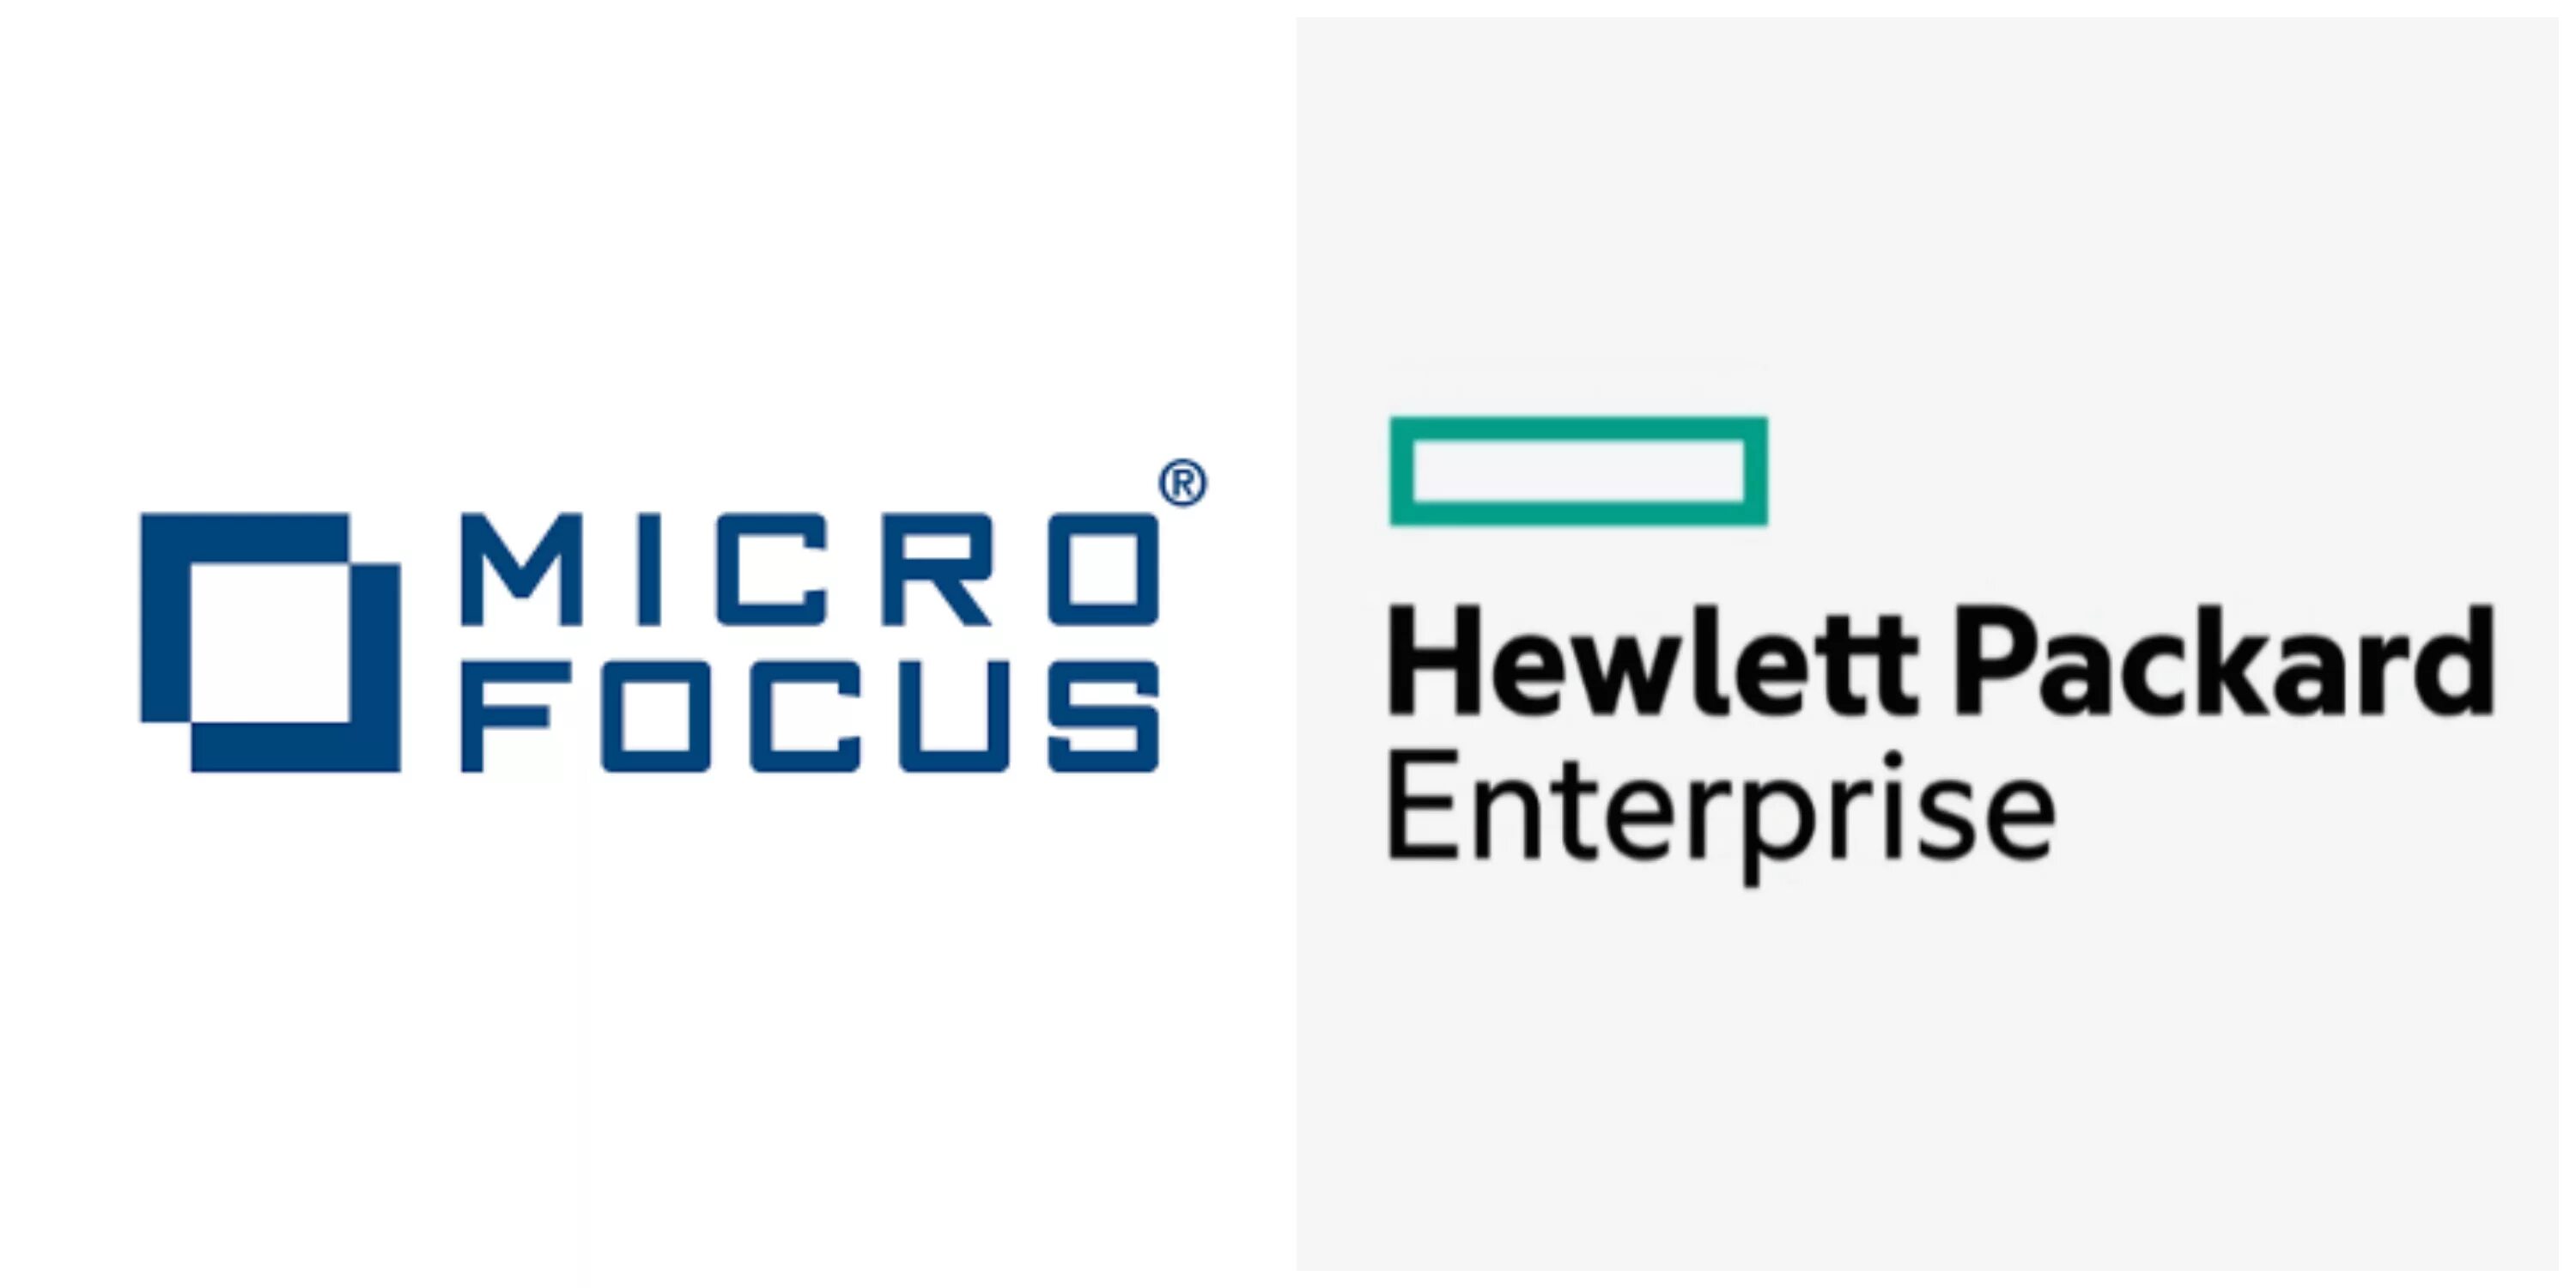 Hewlett packard enterprise. Hewlett Packard Enterprise (HPE). Hewlett Packard Enterprise logo. Micro Focus logo. HPE logo.